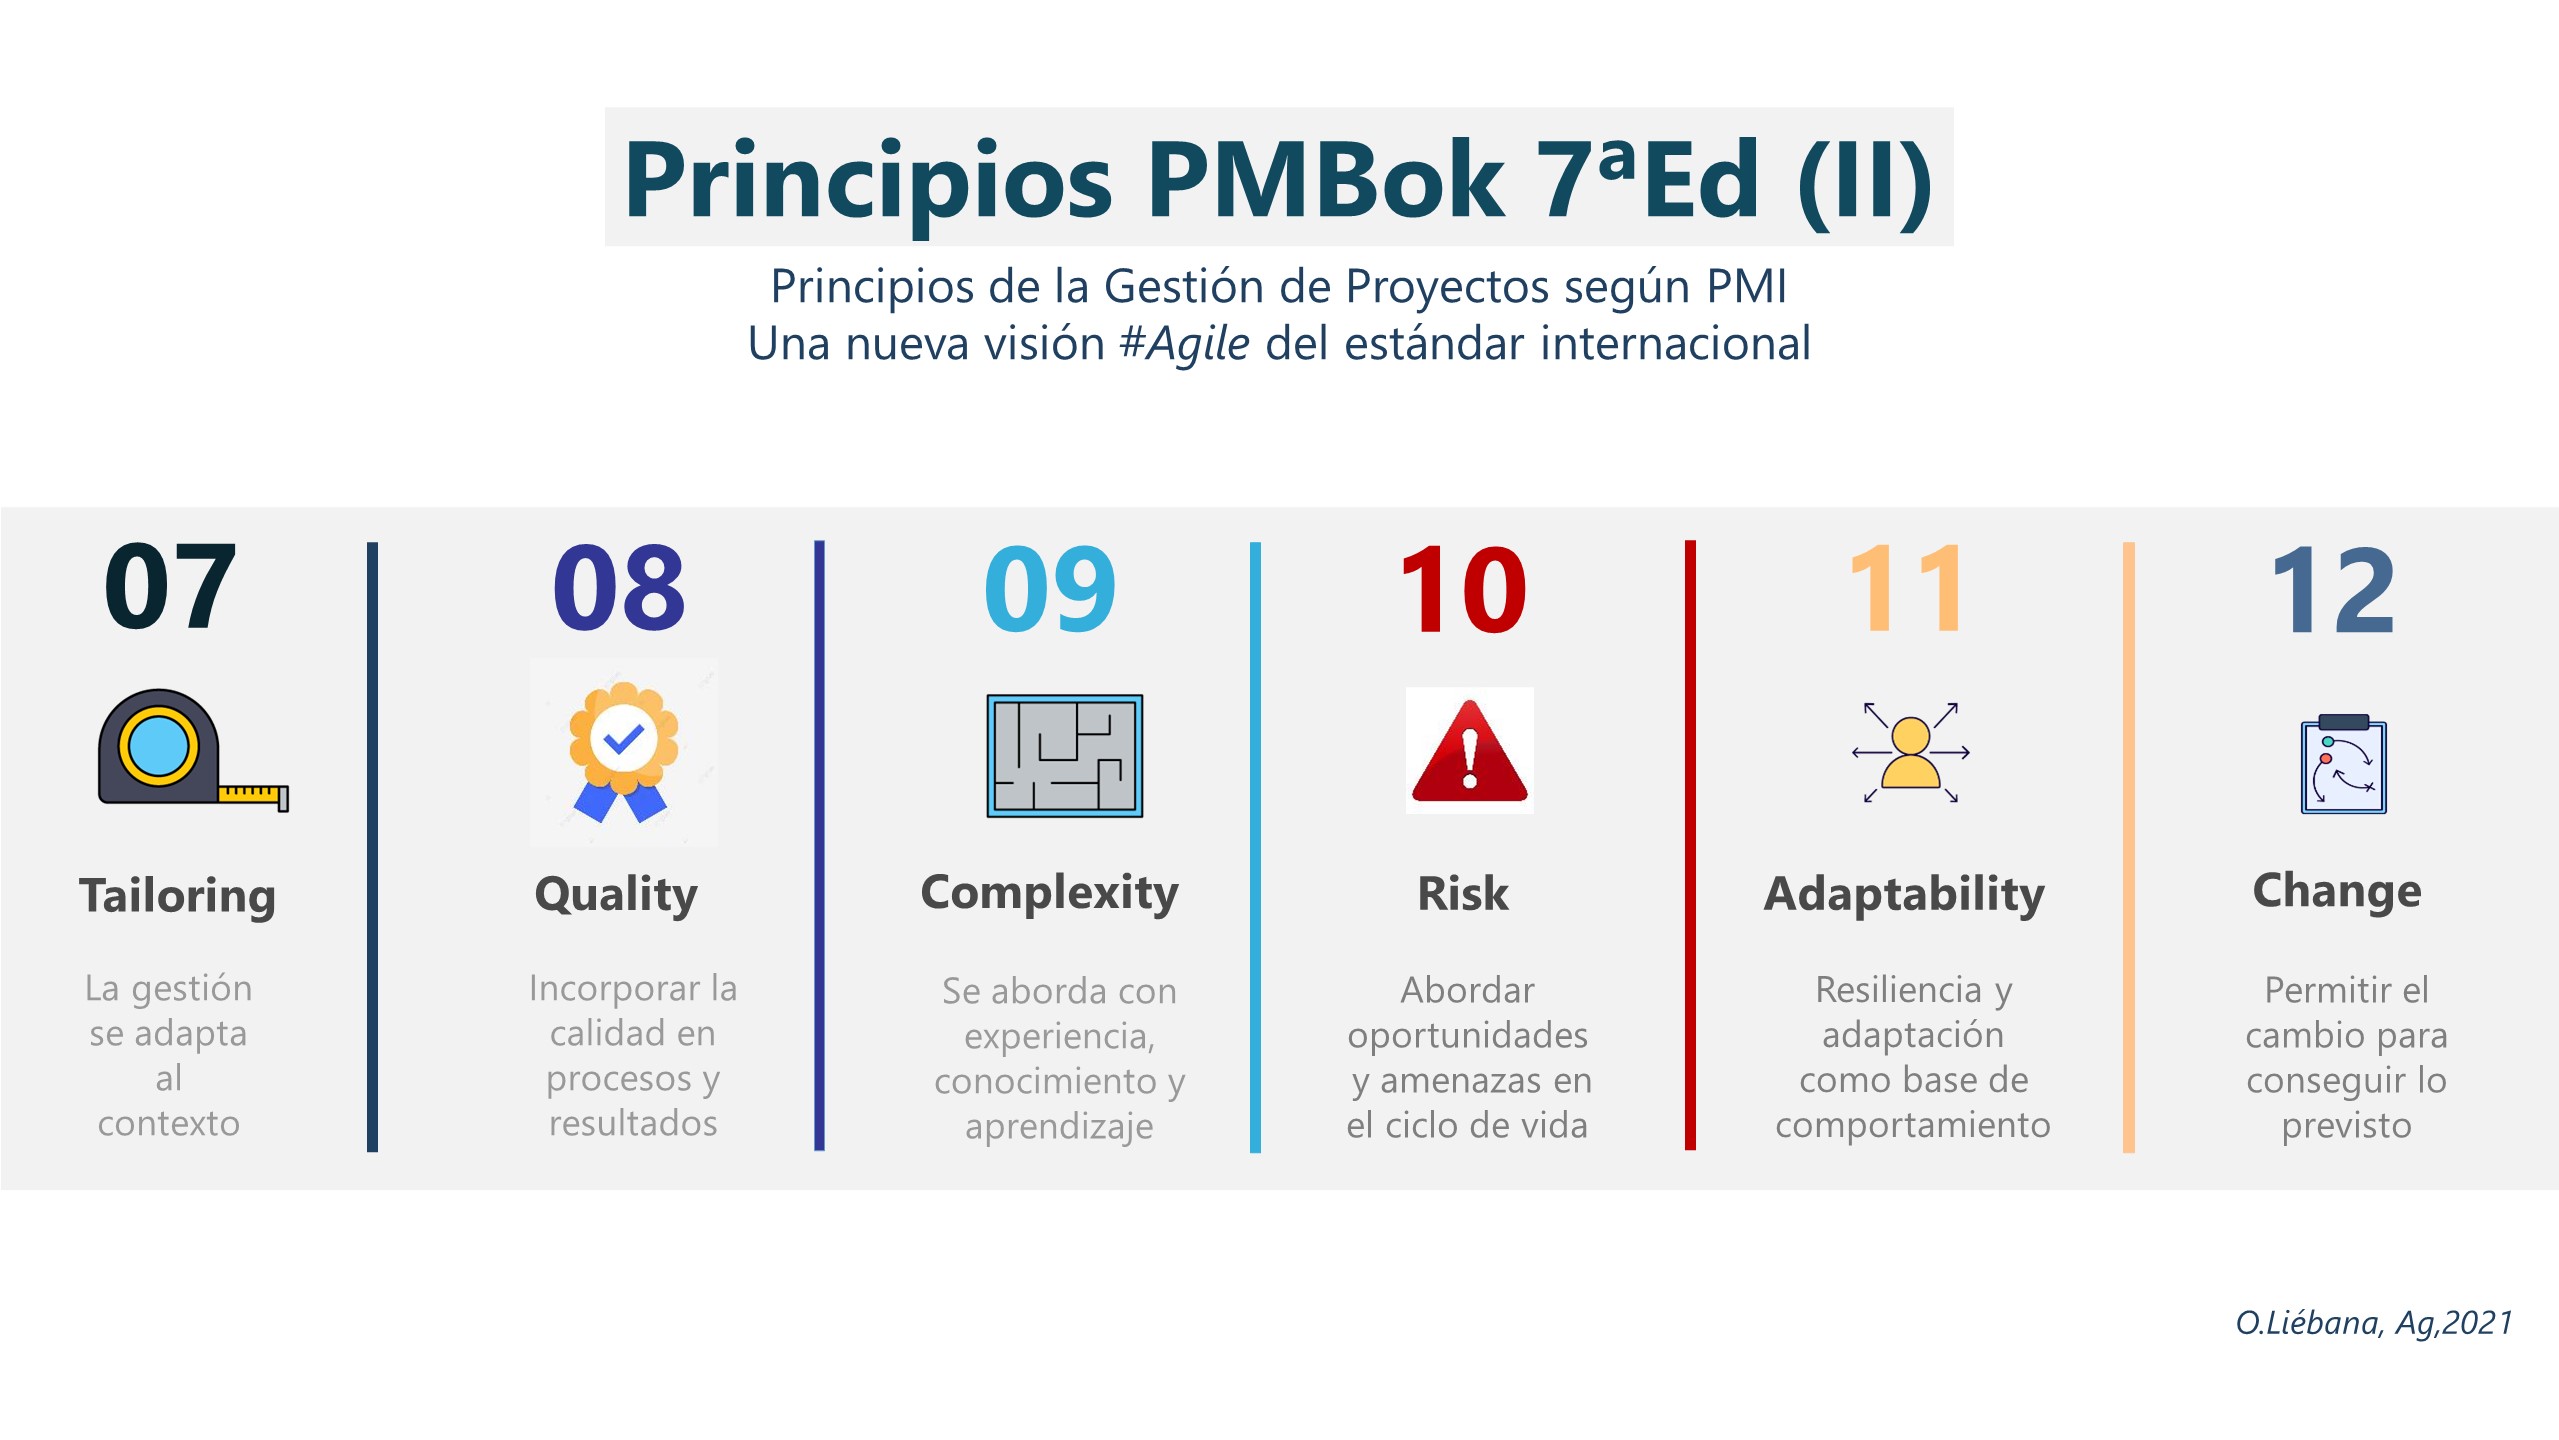 12 Principios PMBOK 7ºed, una nueva visión Agile (II)